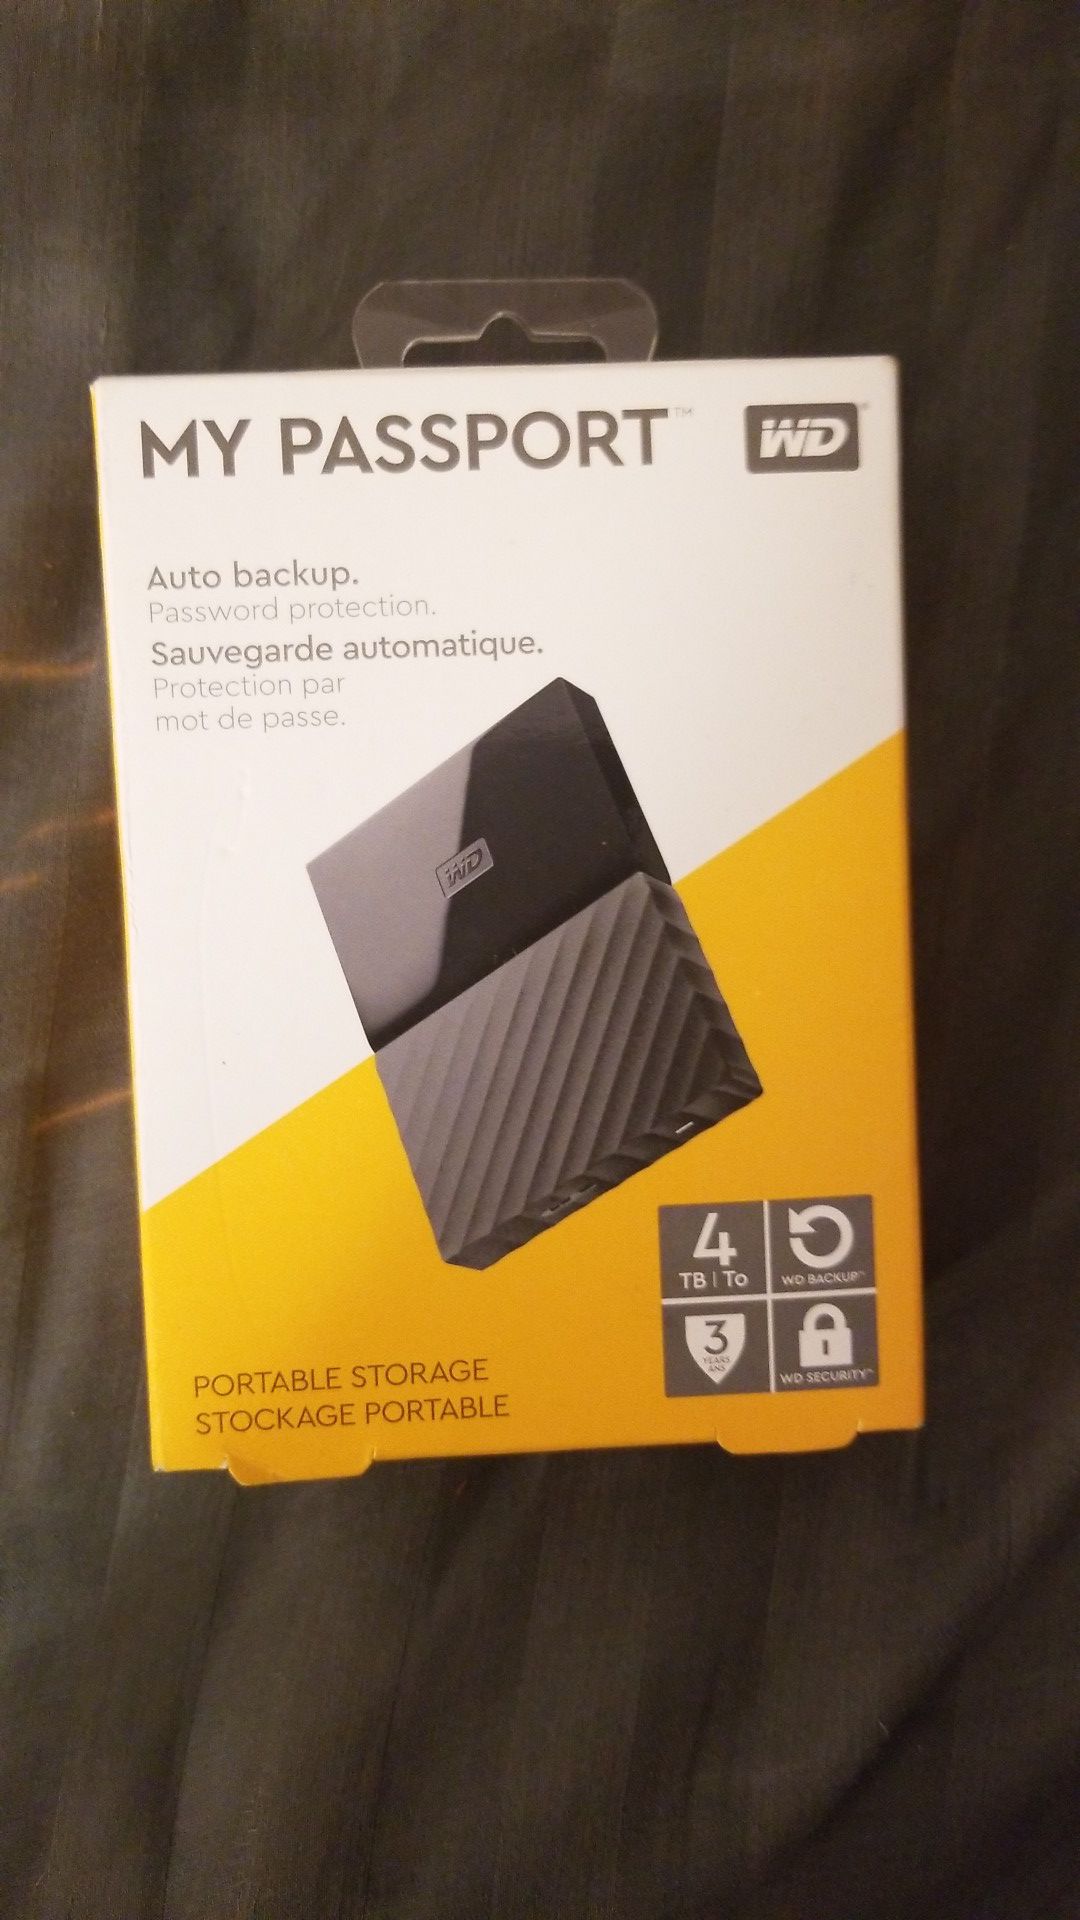 Brand new 4tb My Passport external HDD